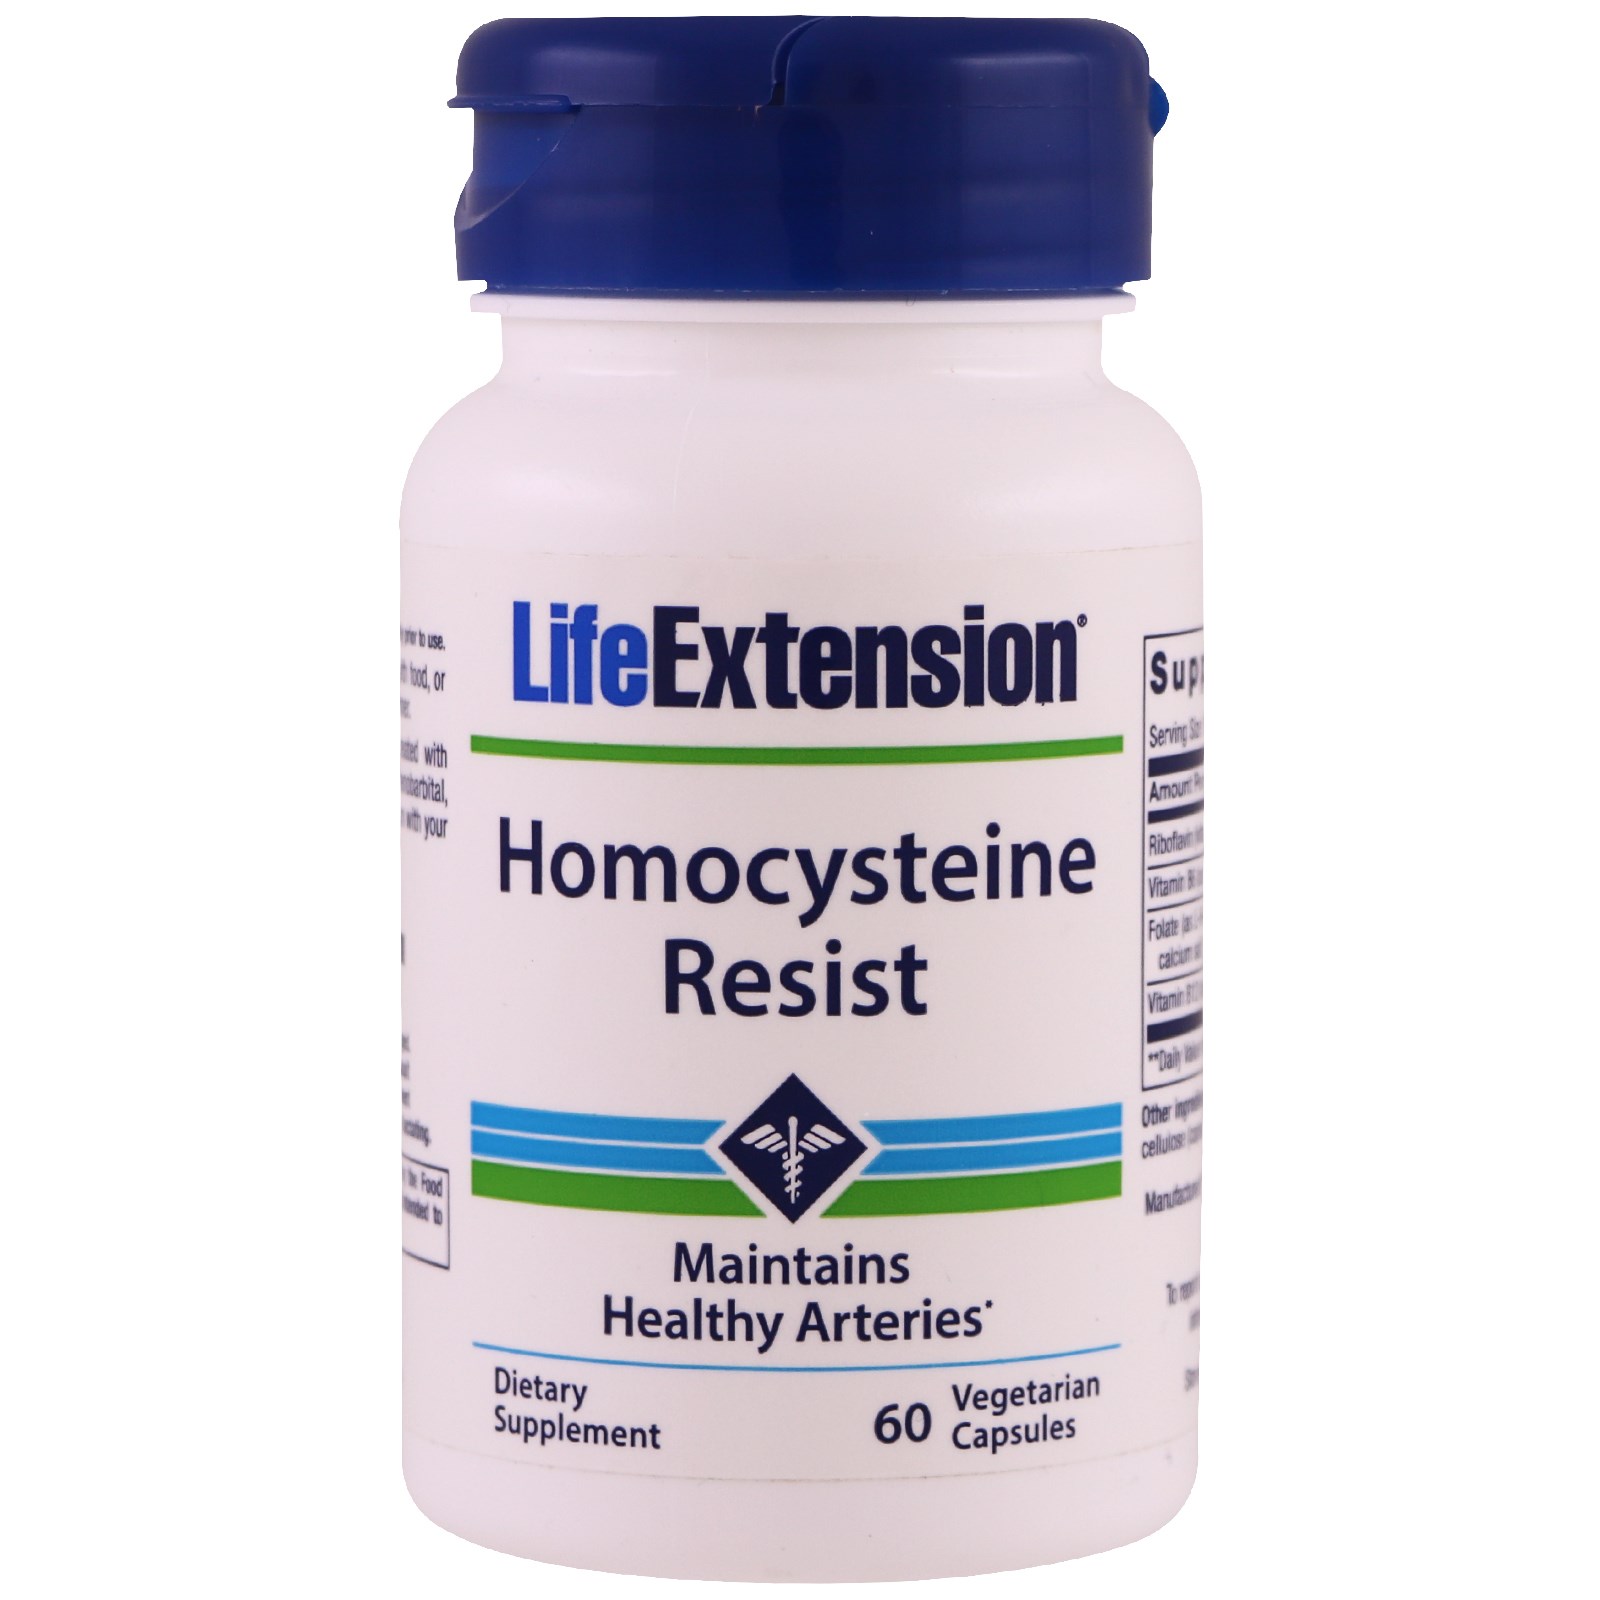 Гомоцистеин фолиевая. /Life-Extension-homocysteine-resist-60-Vegetarian-Capsules. Homocysteine resist витамины. Life Extension homocysteine resist. Гомоцистеин резист лайф экстеншн.